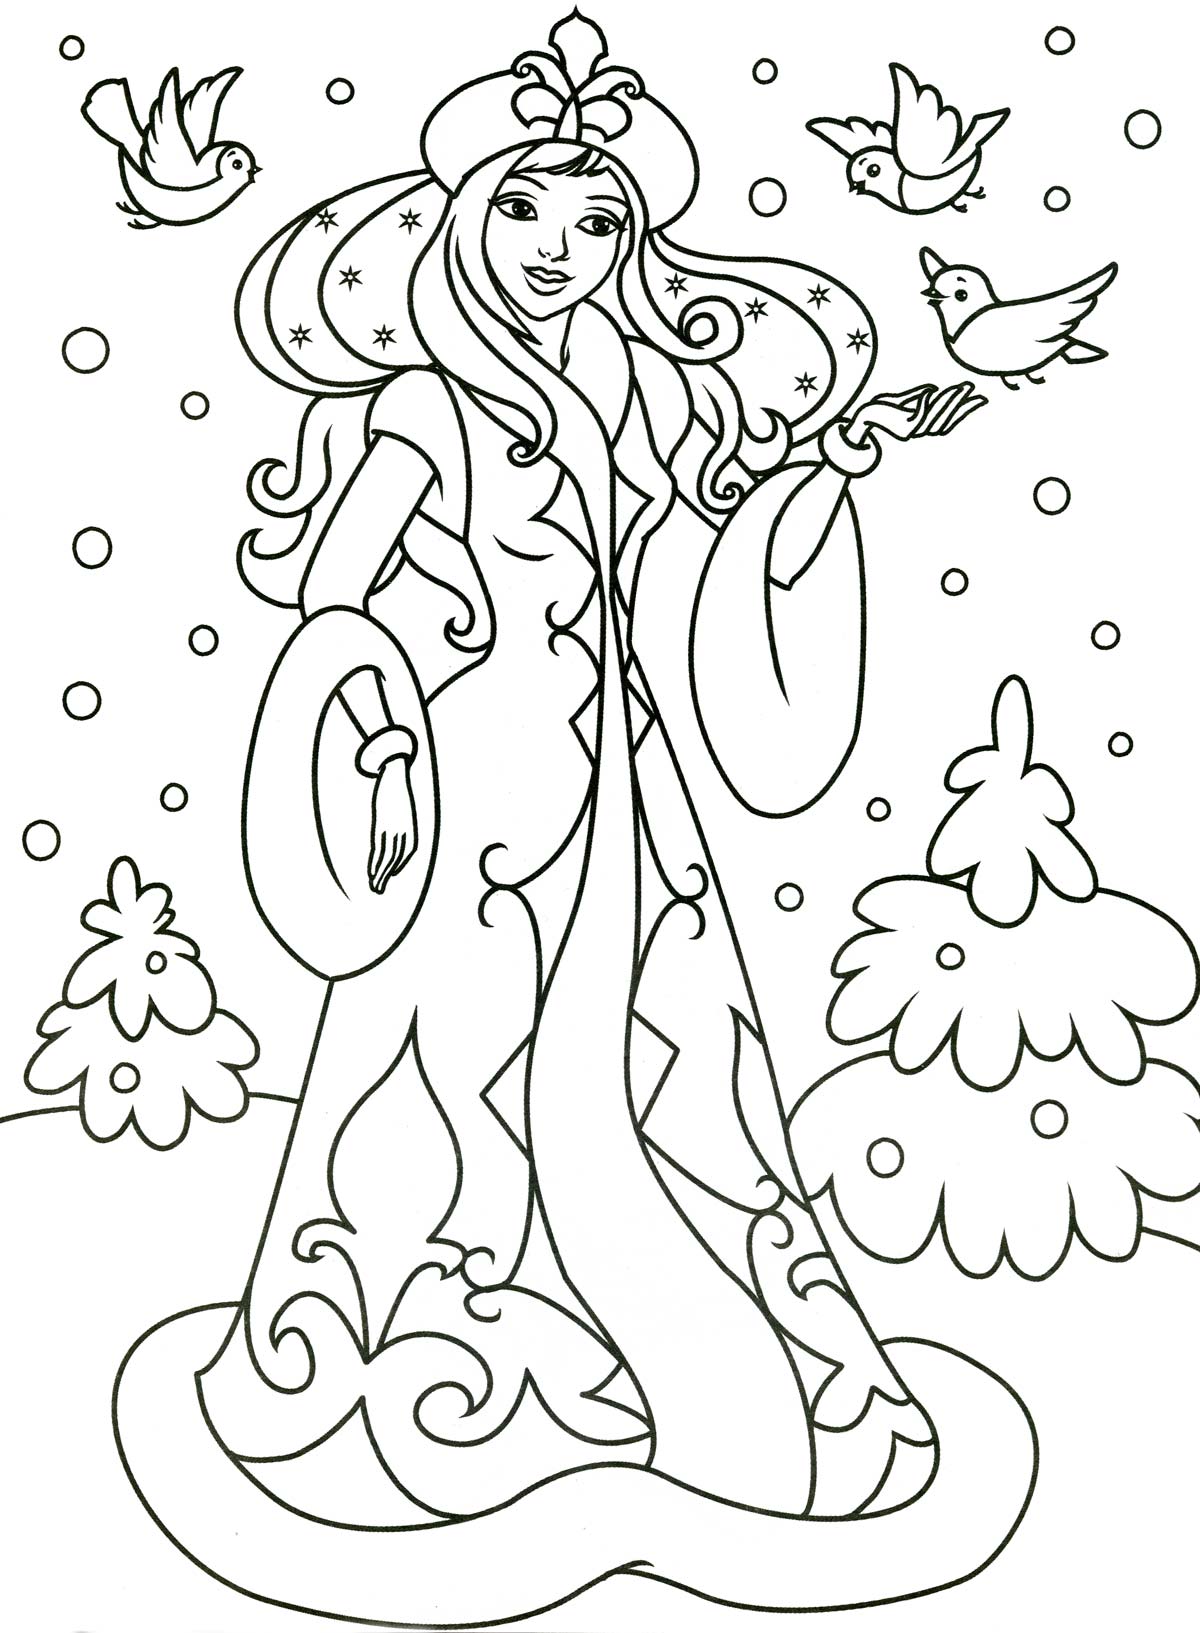 Раскраска зима с снегурочкой и птицами для девочек мальчиков (зима, снегурочка)